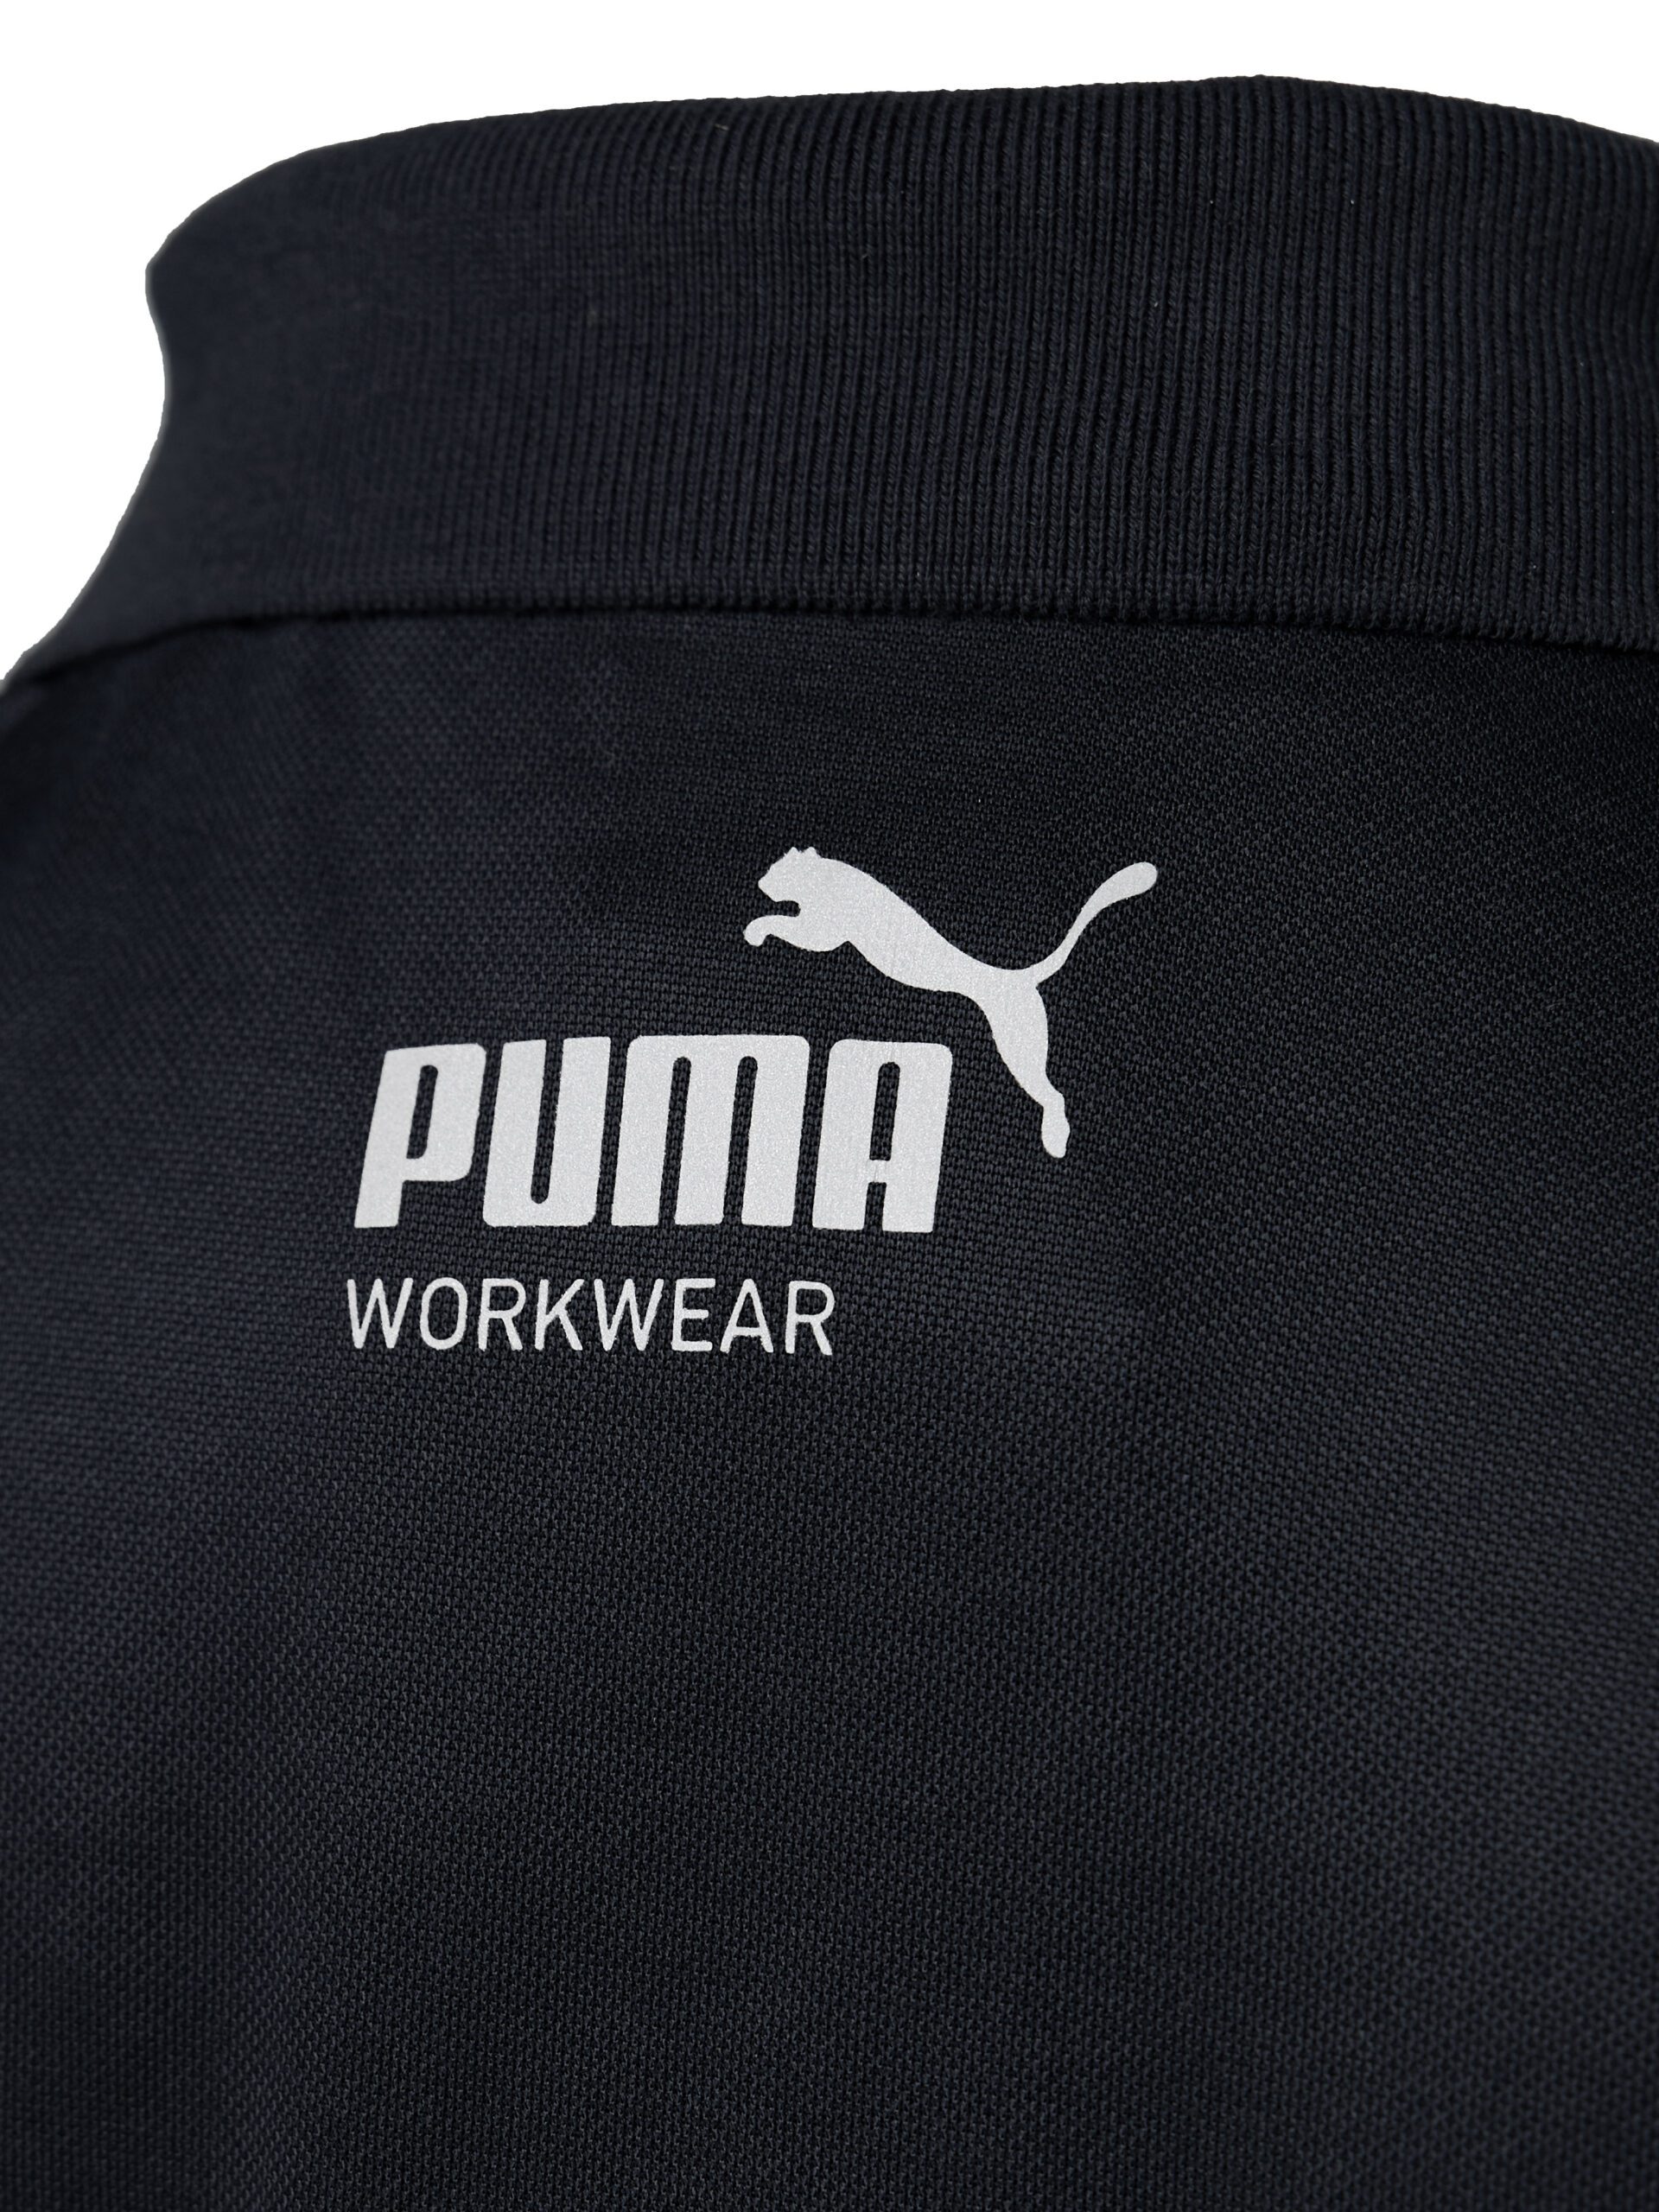 PUMA Workwear Essentials Men\'s Polo Shirt | PUMA Workwear